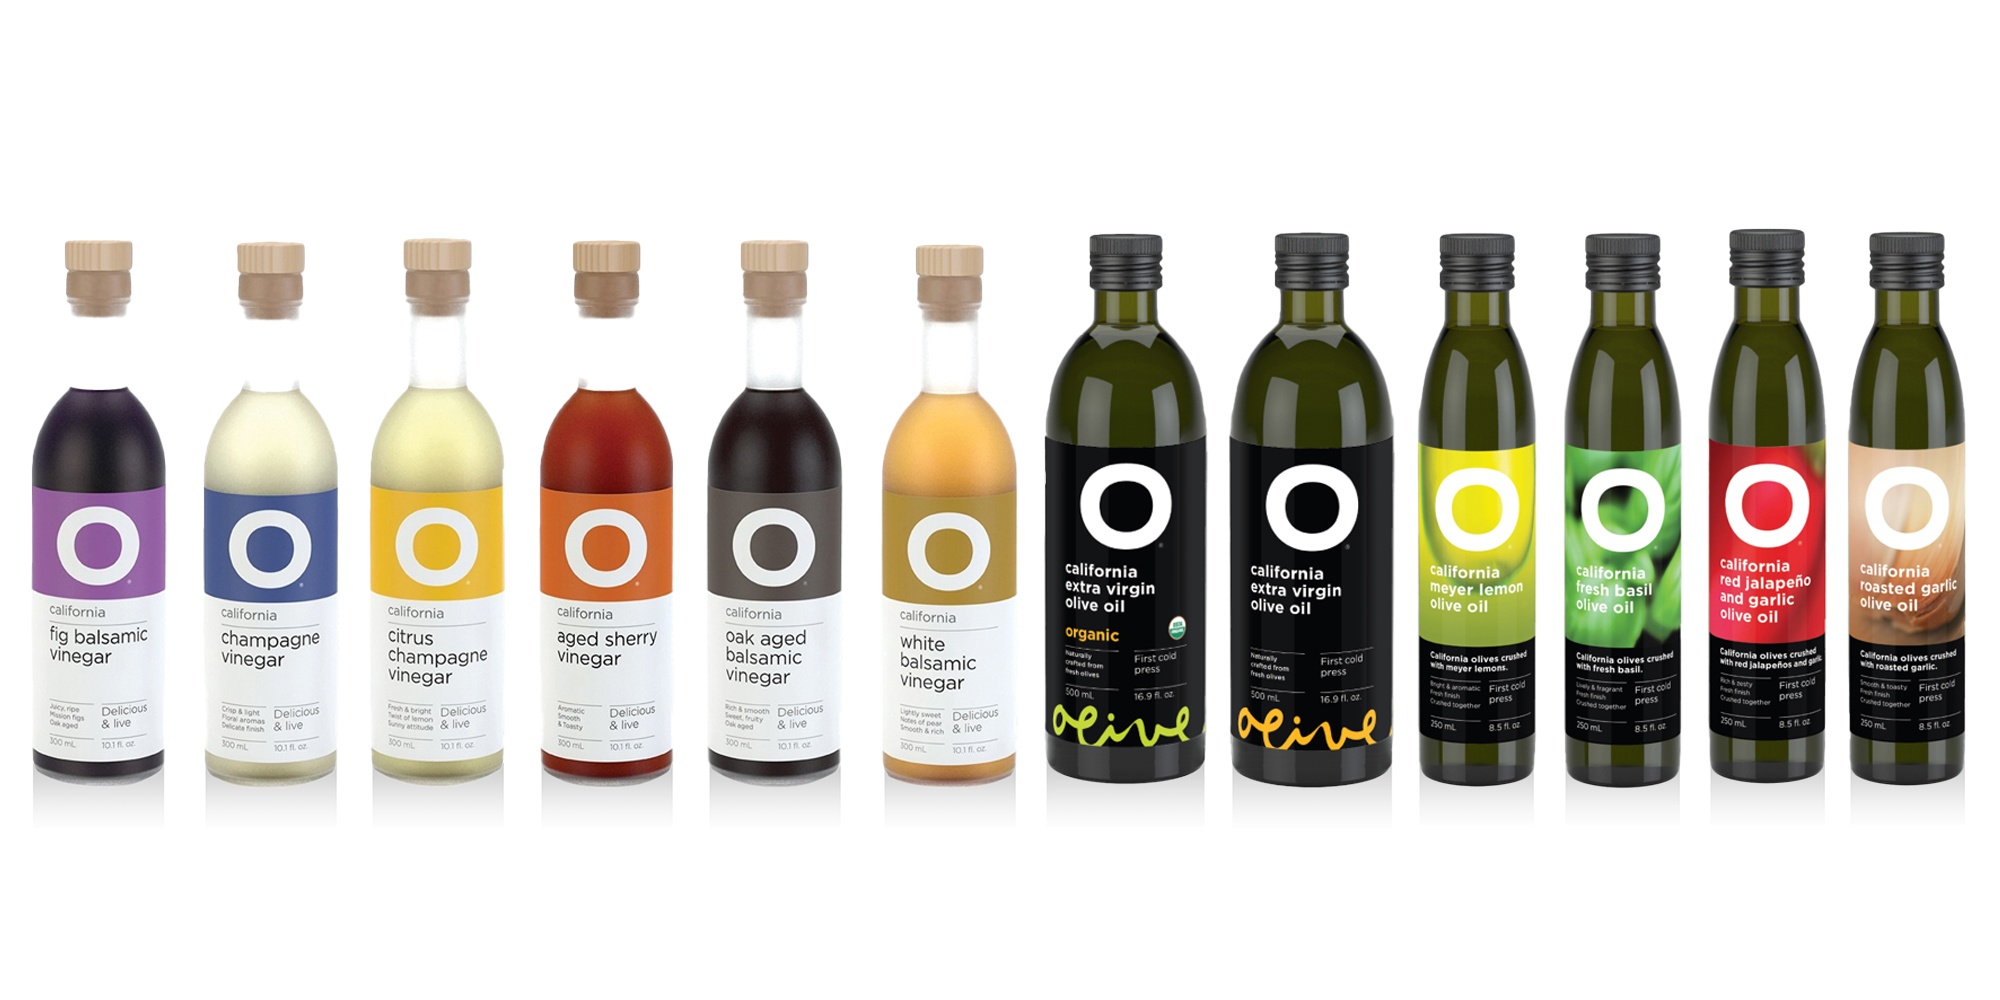 O Olive Oil bottles